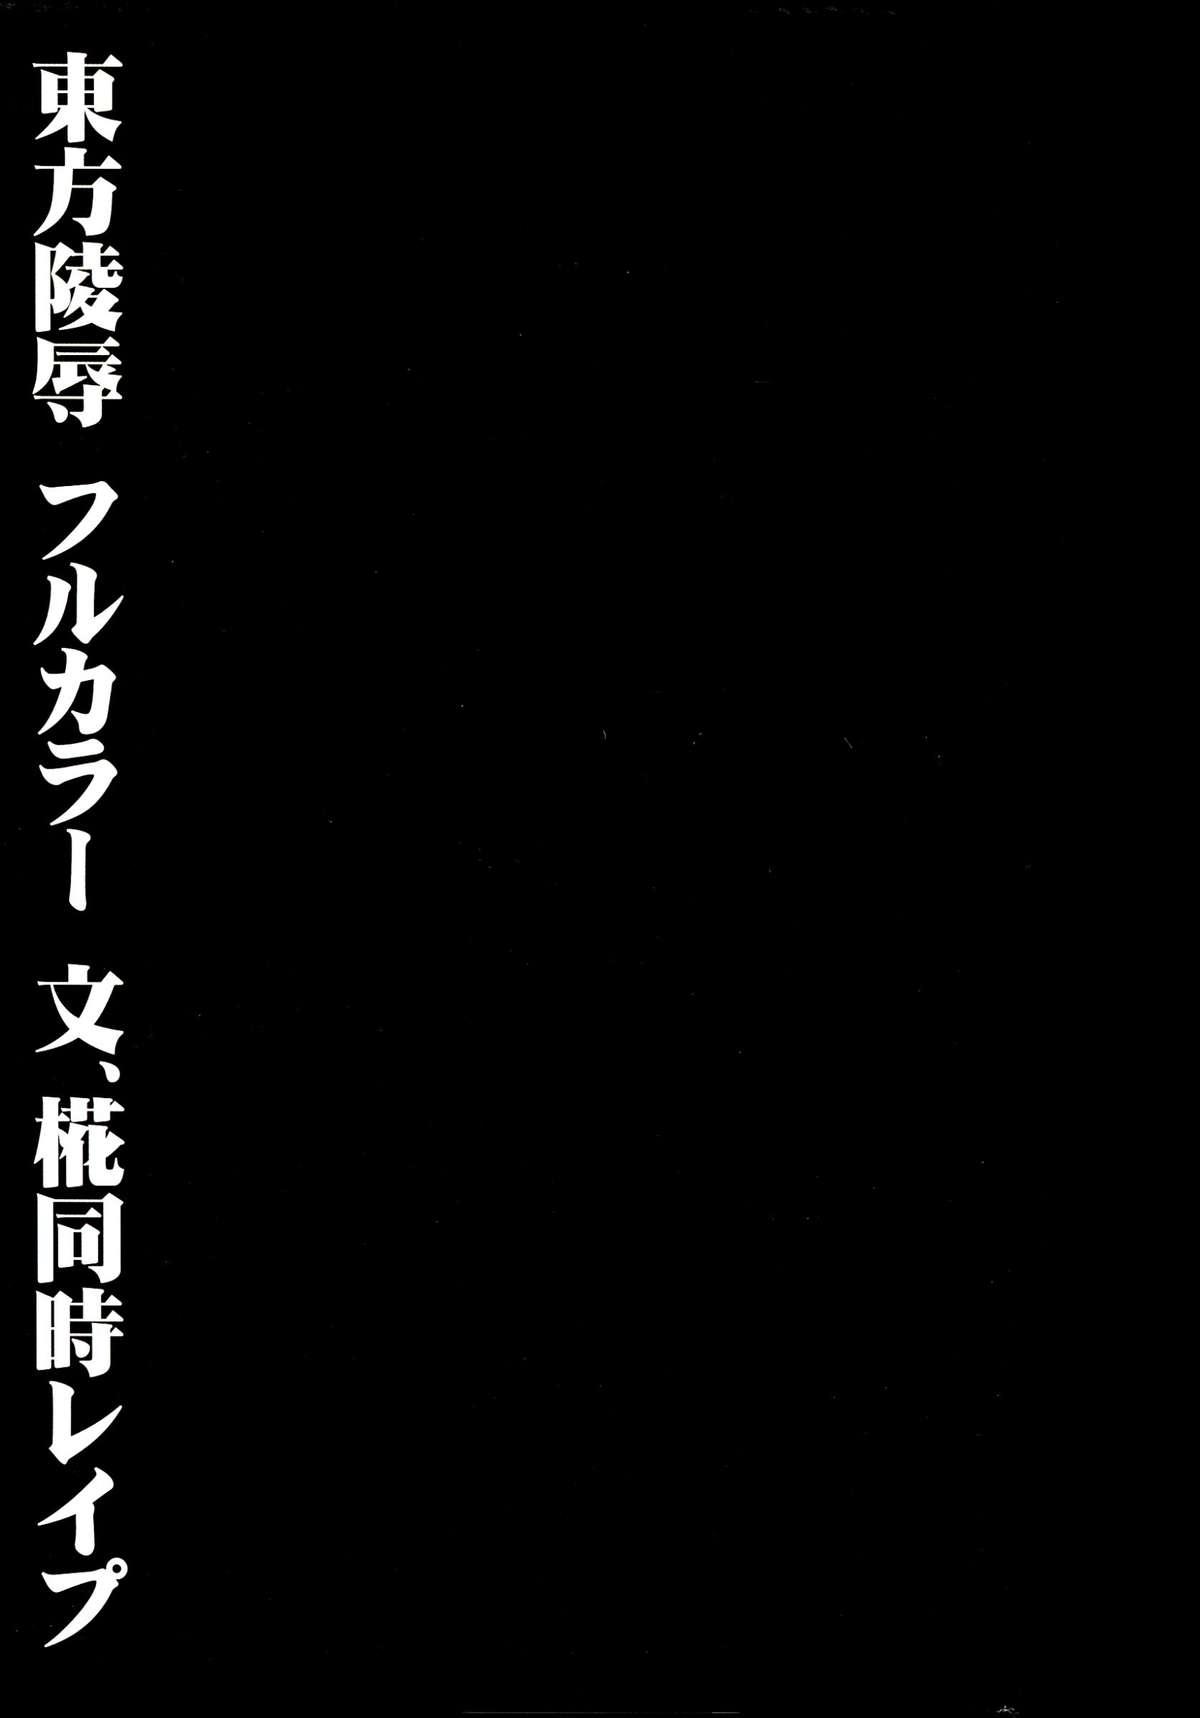 Hiddencam Touhou Ryoujoku 28 Aya, Momiji Douji Rape - Touhou project Friends - Page 2